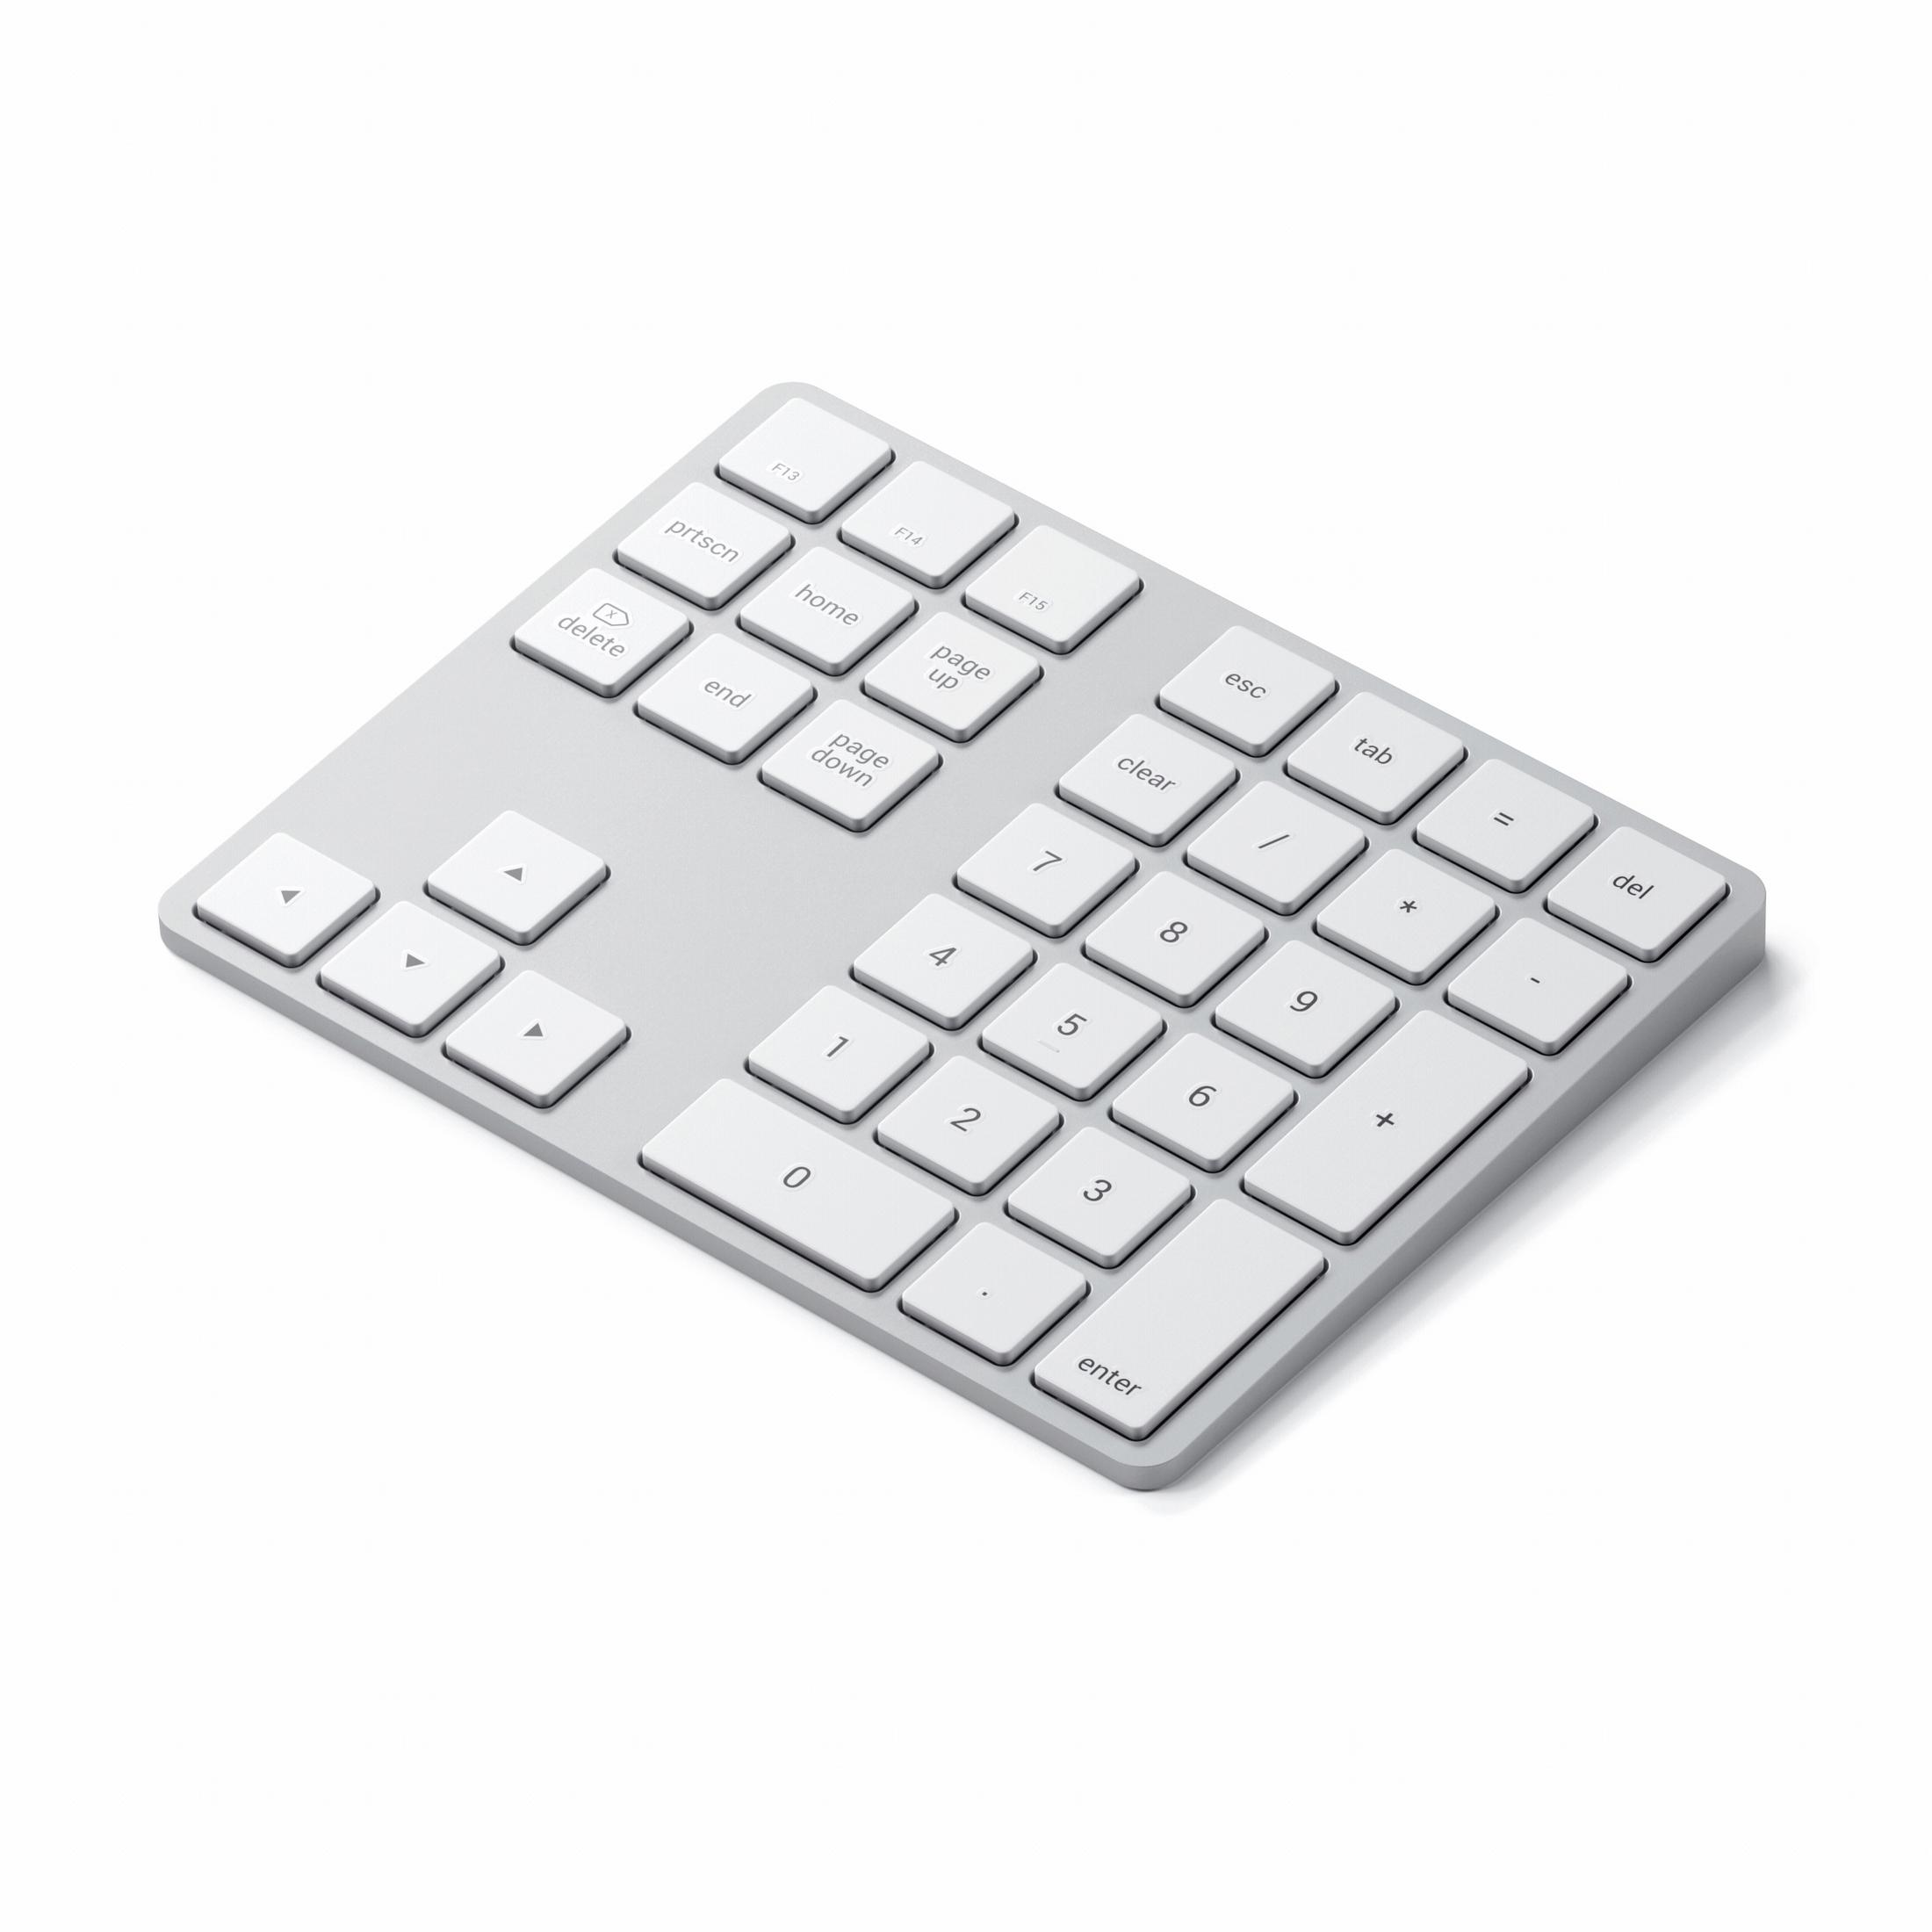 SATECHI ST-XLABKS EXTENDED WRLS SILVER, Tastaturerweiterung